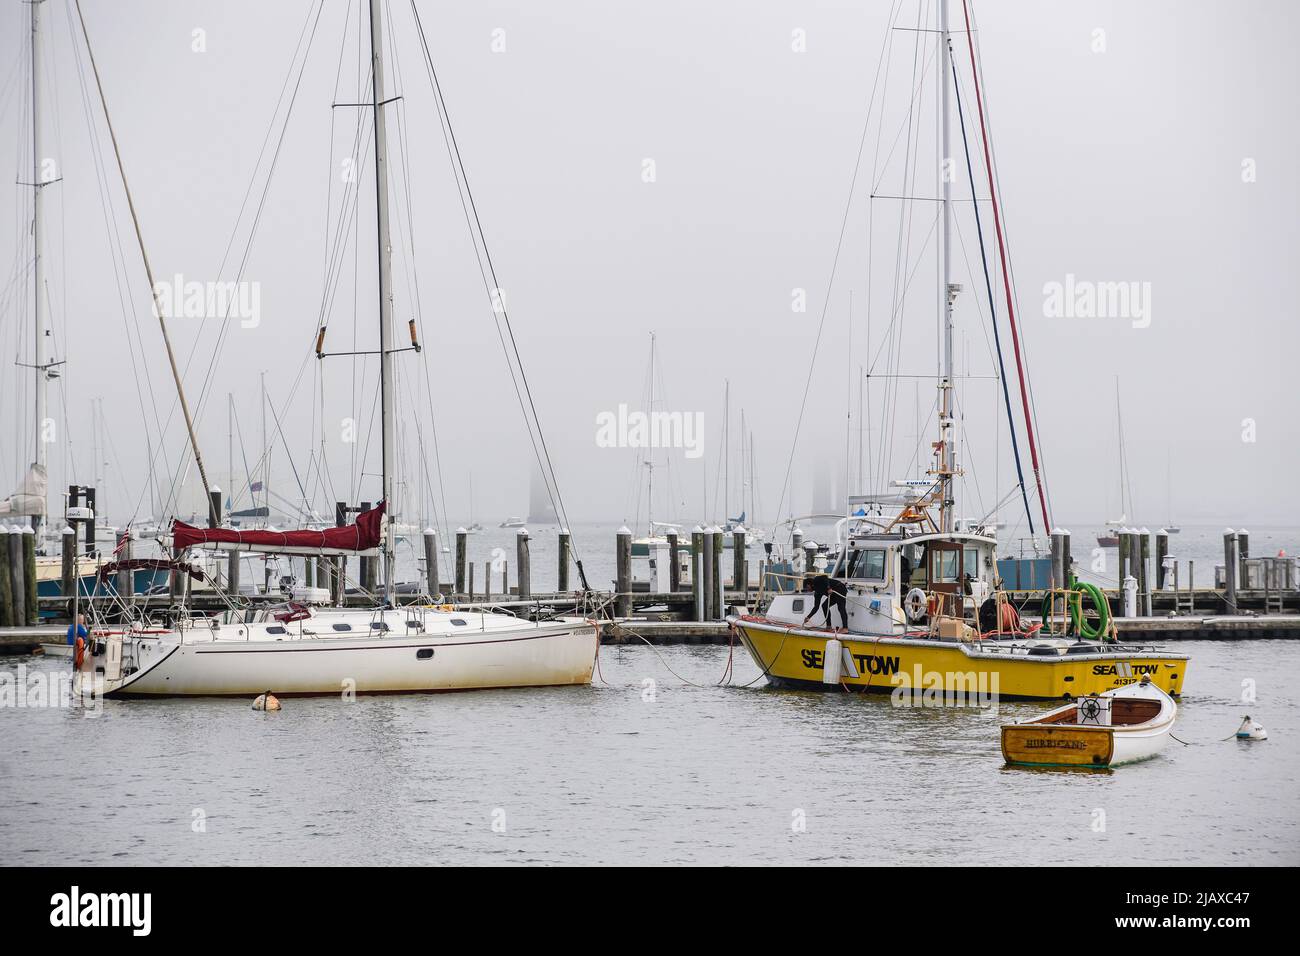 Stock-Fotos von Tropical Storm Henri aus dem Jahr 2021 in Newport, Rhode Island. Blick auf Segelboote und Docks während eines Sturms. Stockfoto